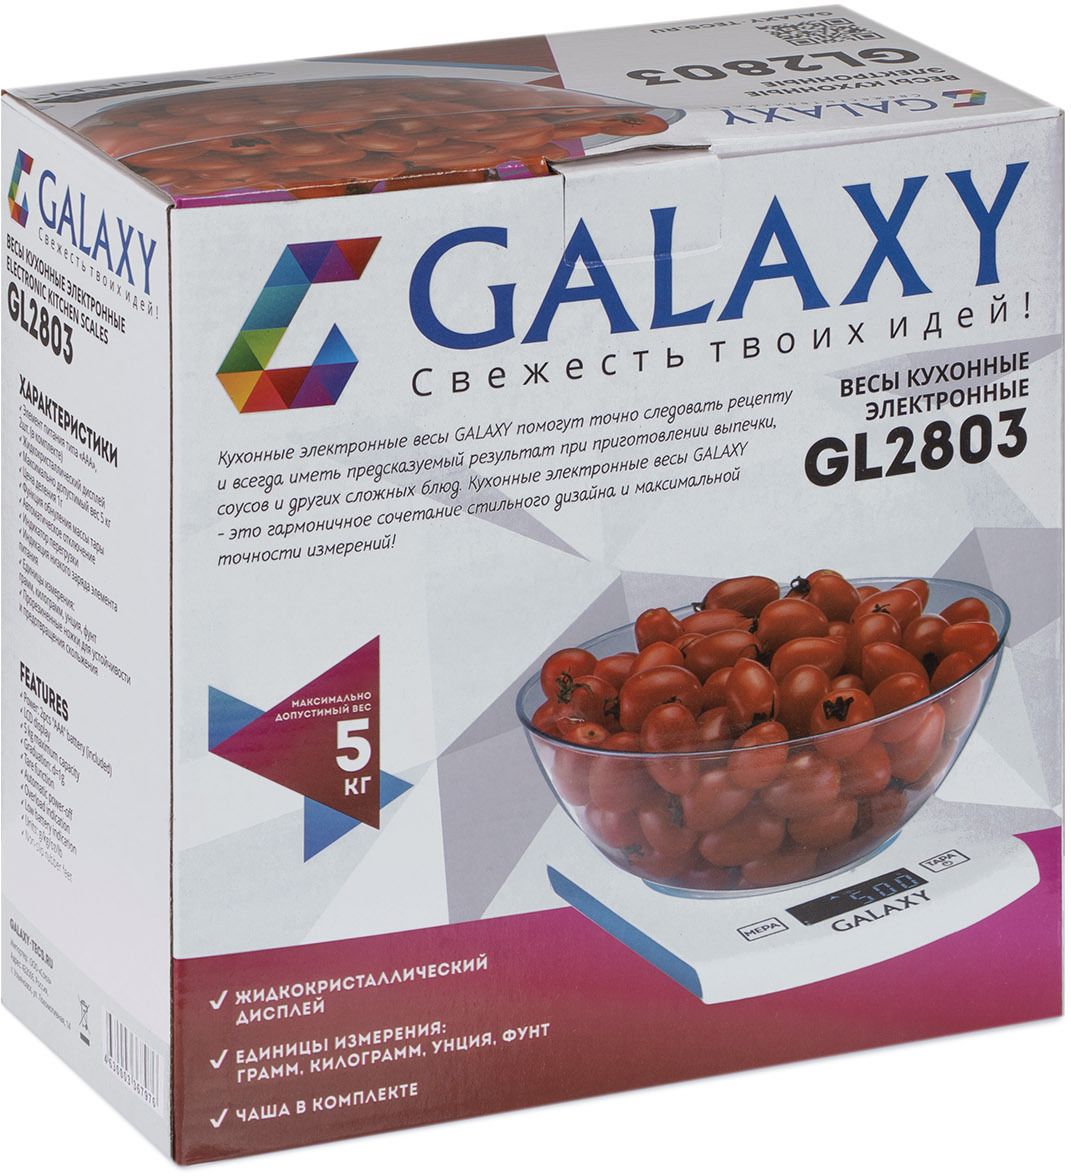   Galaxy GL 2803, , 